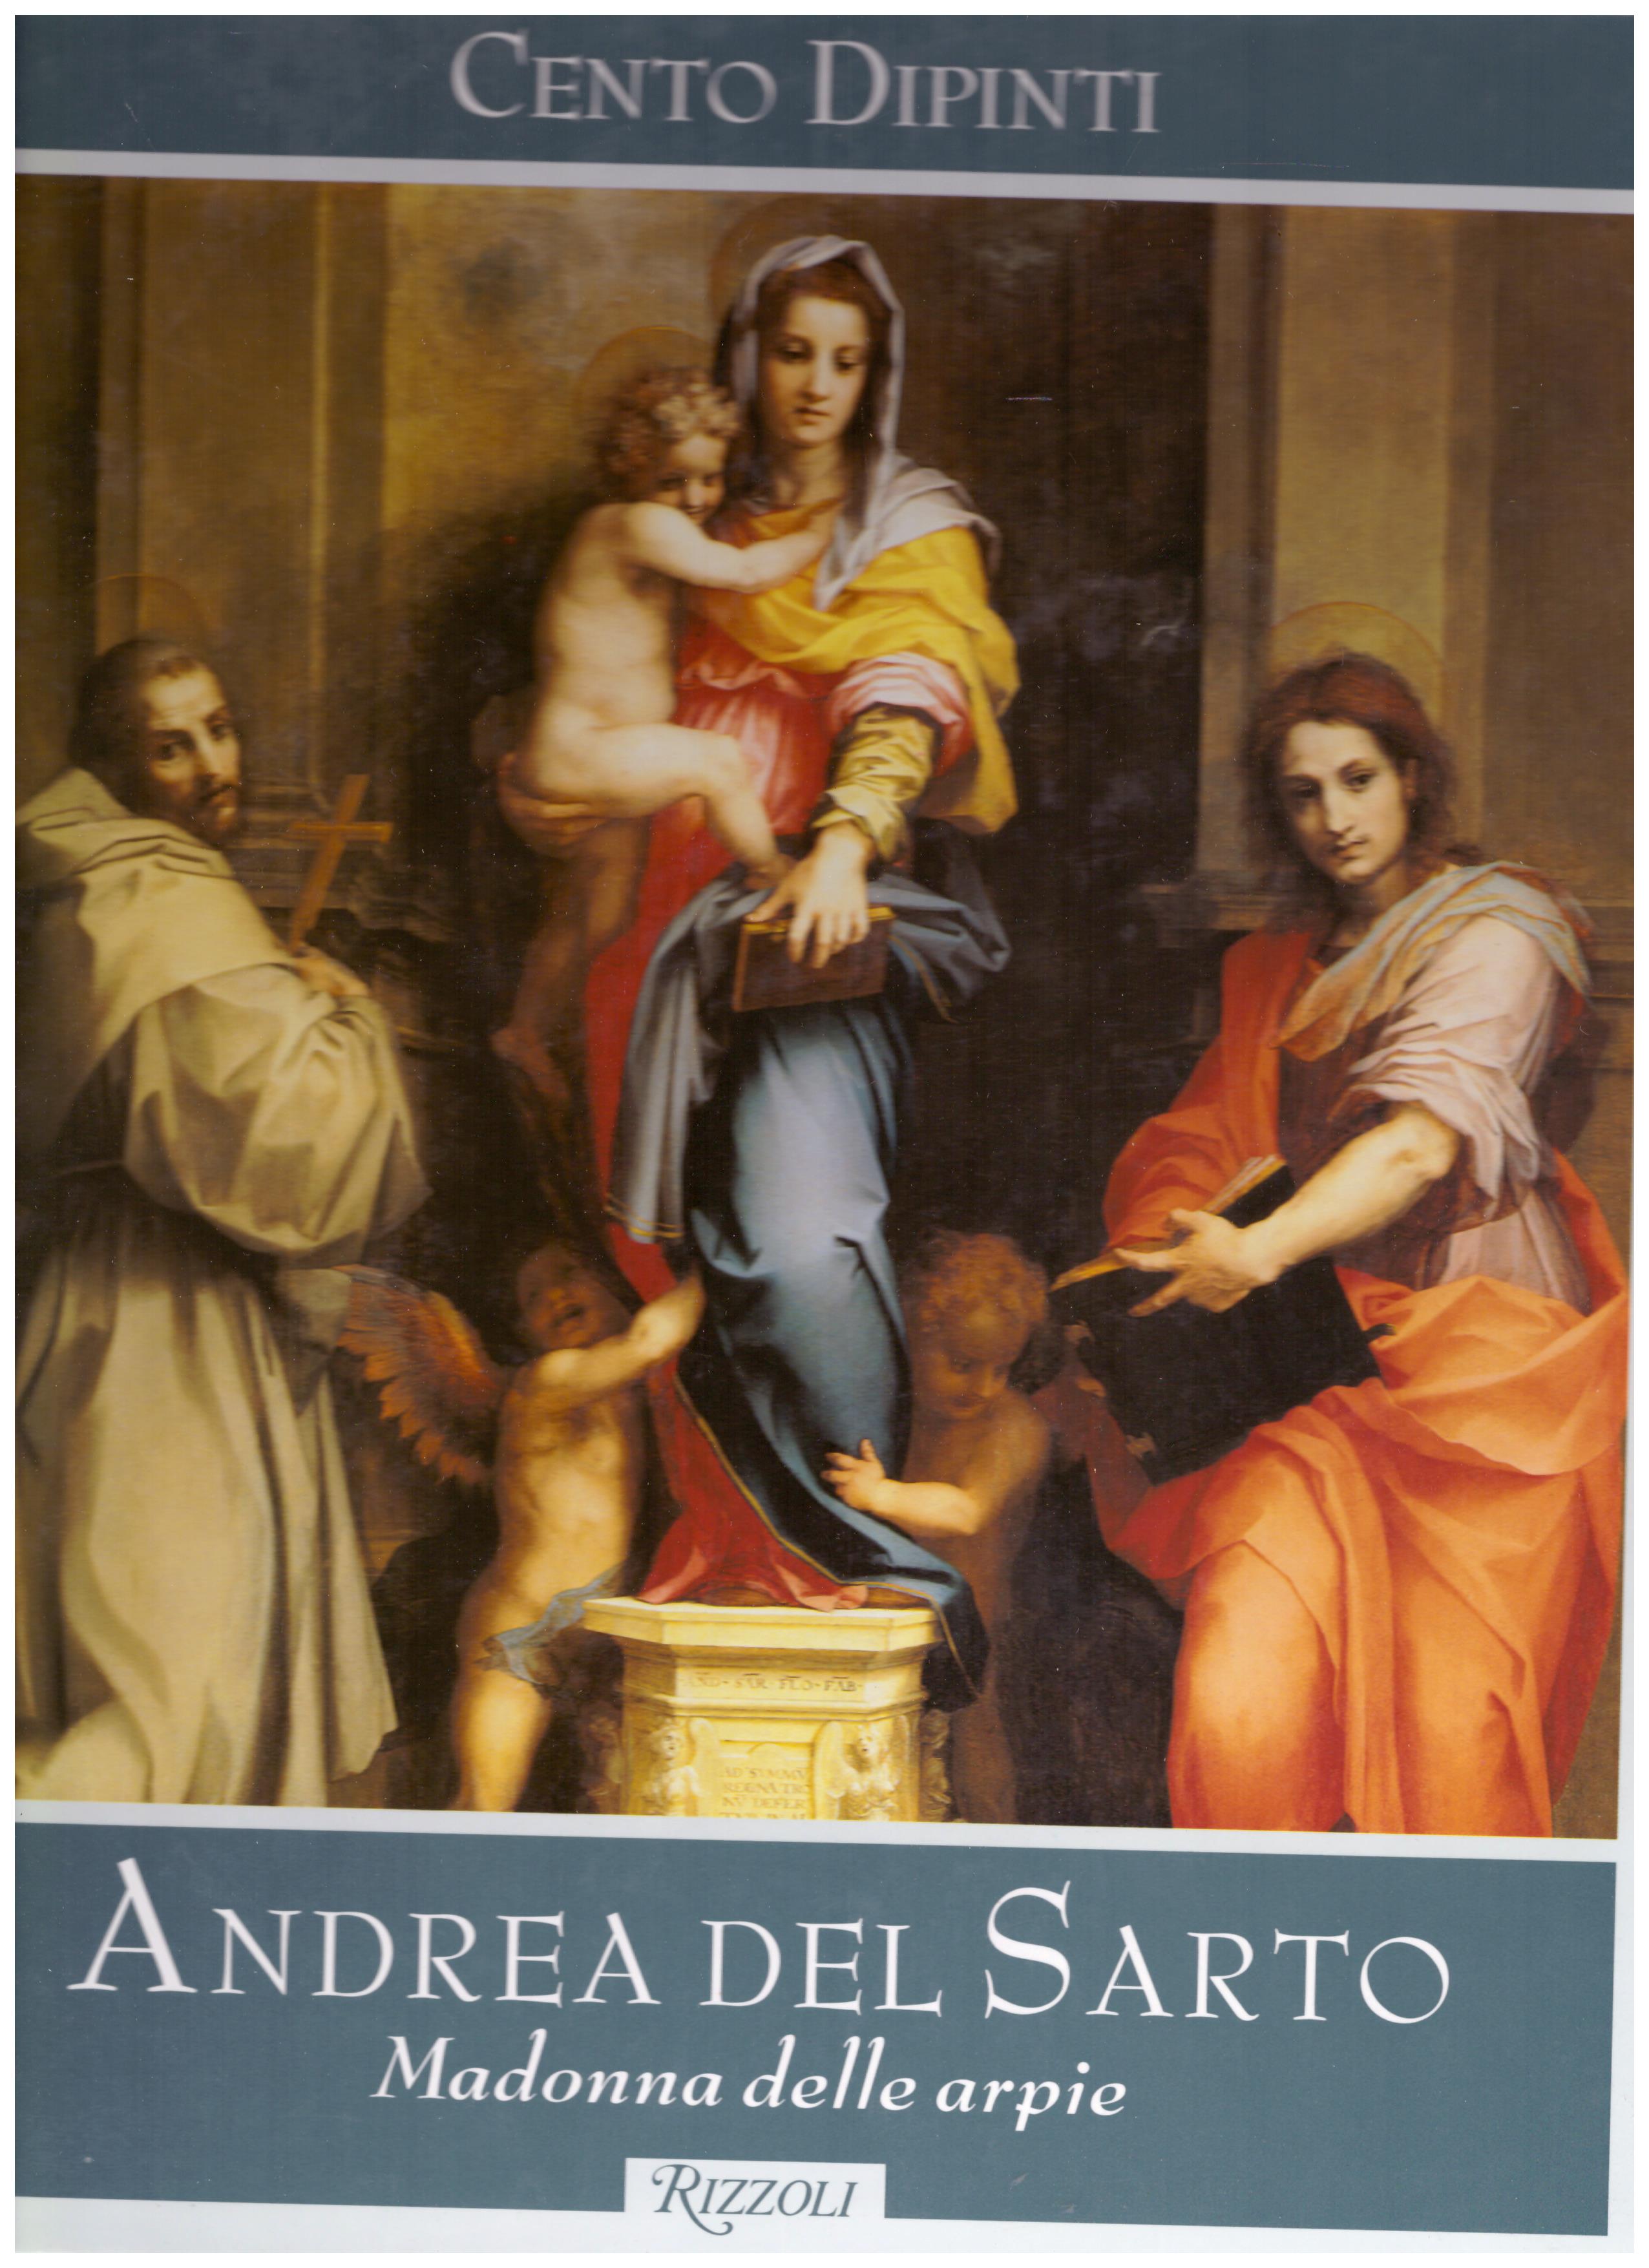 Titolo: Cento Dipinti, Andrea del Sarto, Madonna delle arpie Autore : AA.VV.  Editore: Rizzoli